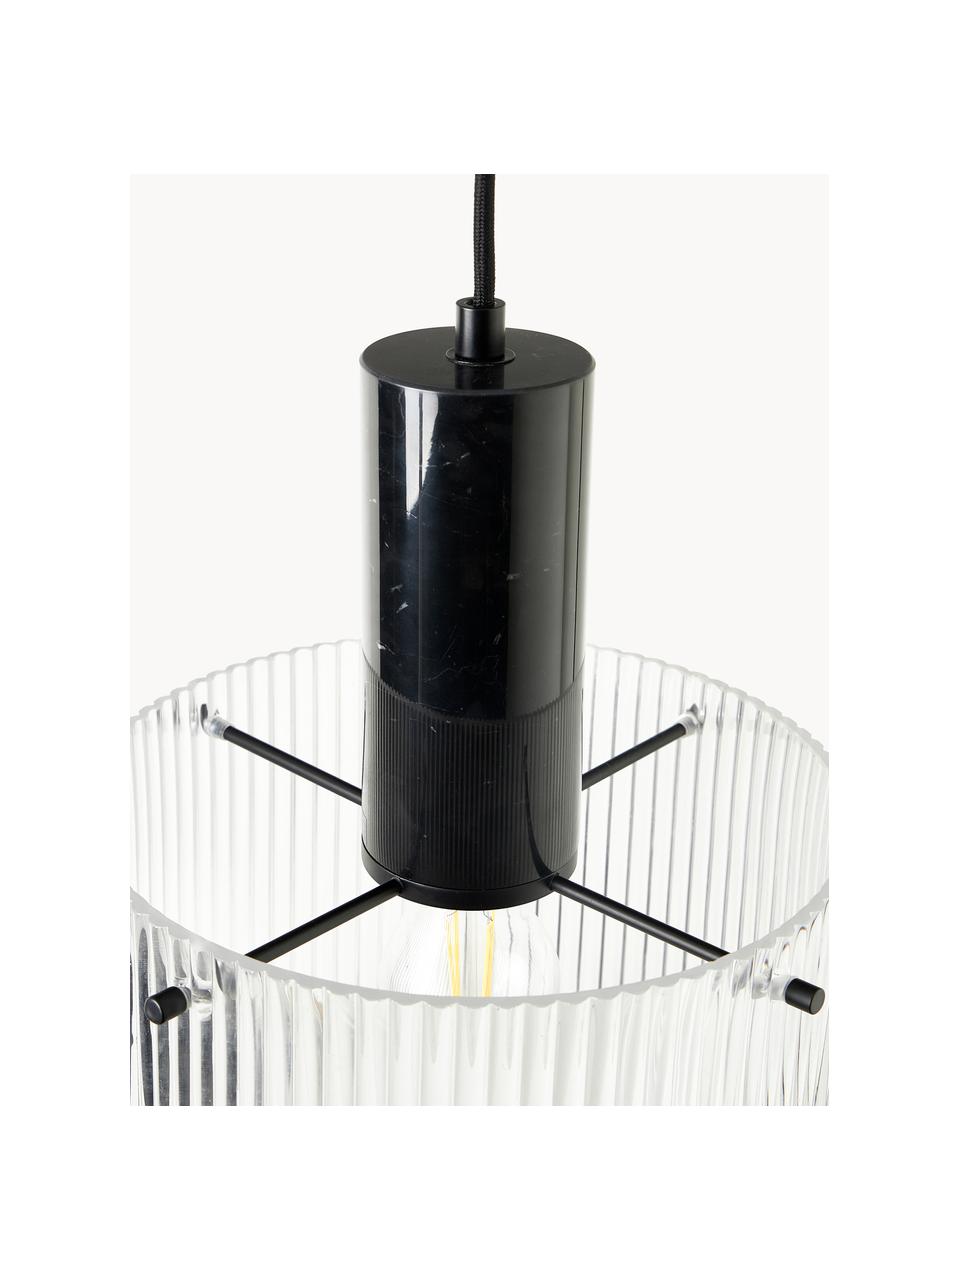 Hanglamp Revolve met geribbeld oppervlak, Lampenkap: glas, Fitting: marmer, Transparant, zwart, gemarmerd, Ø 25 x H 30 cm